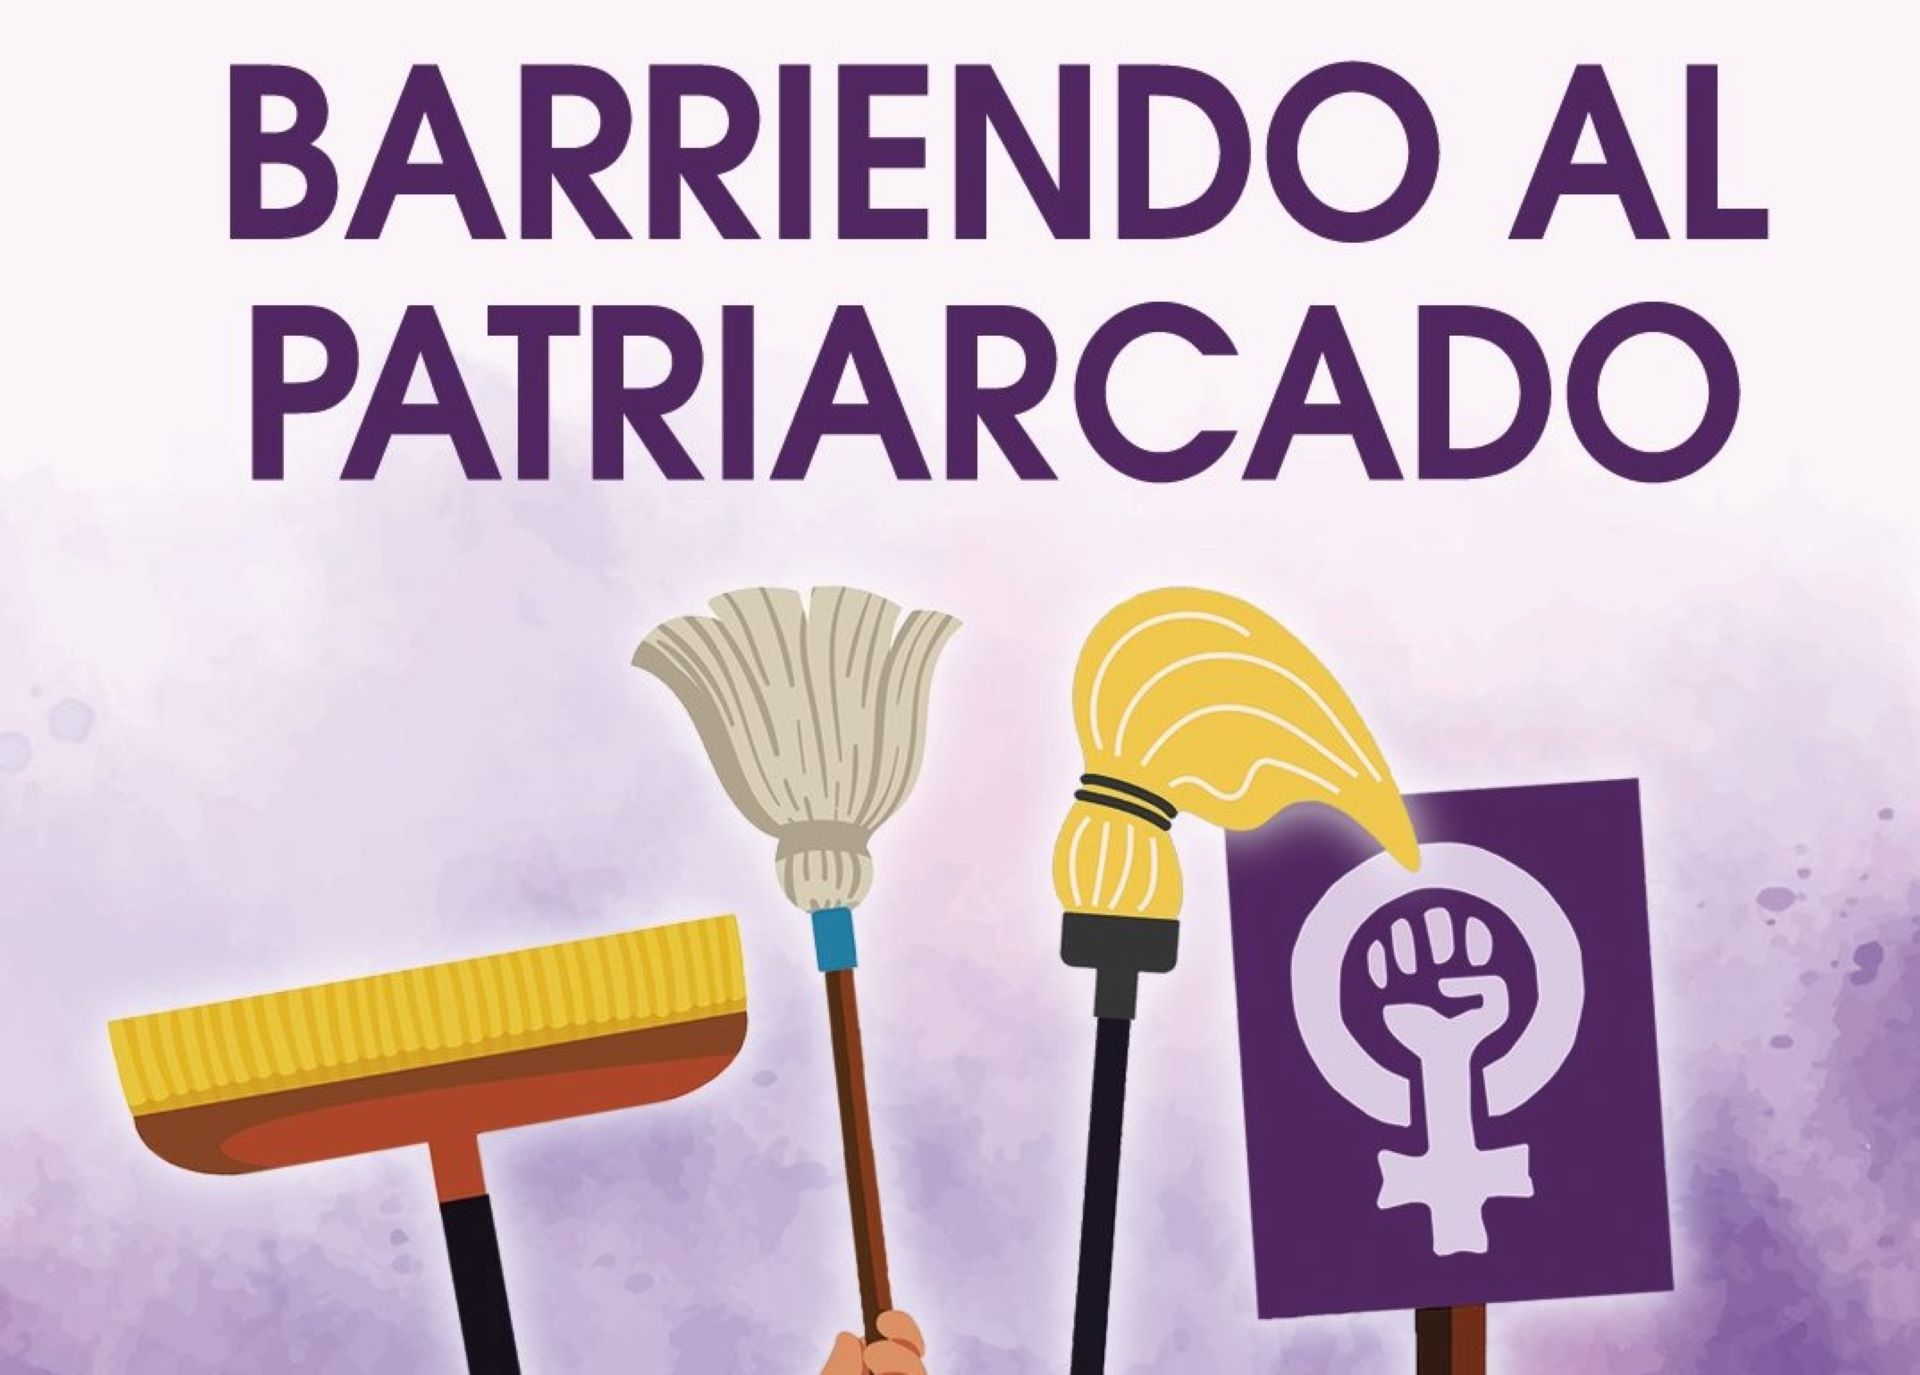 Polèmica per una campanya del PCE que crida a "escombrar" el patriarcat el 8 de març